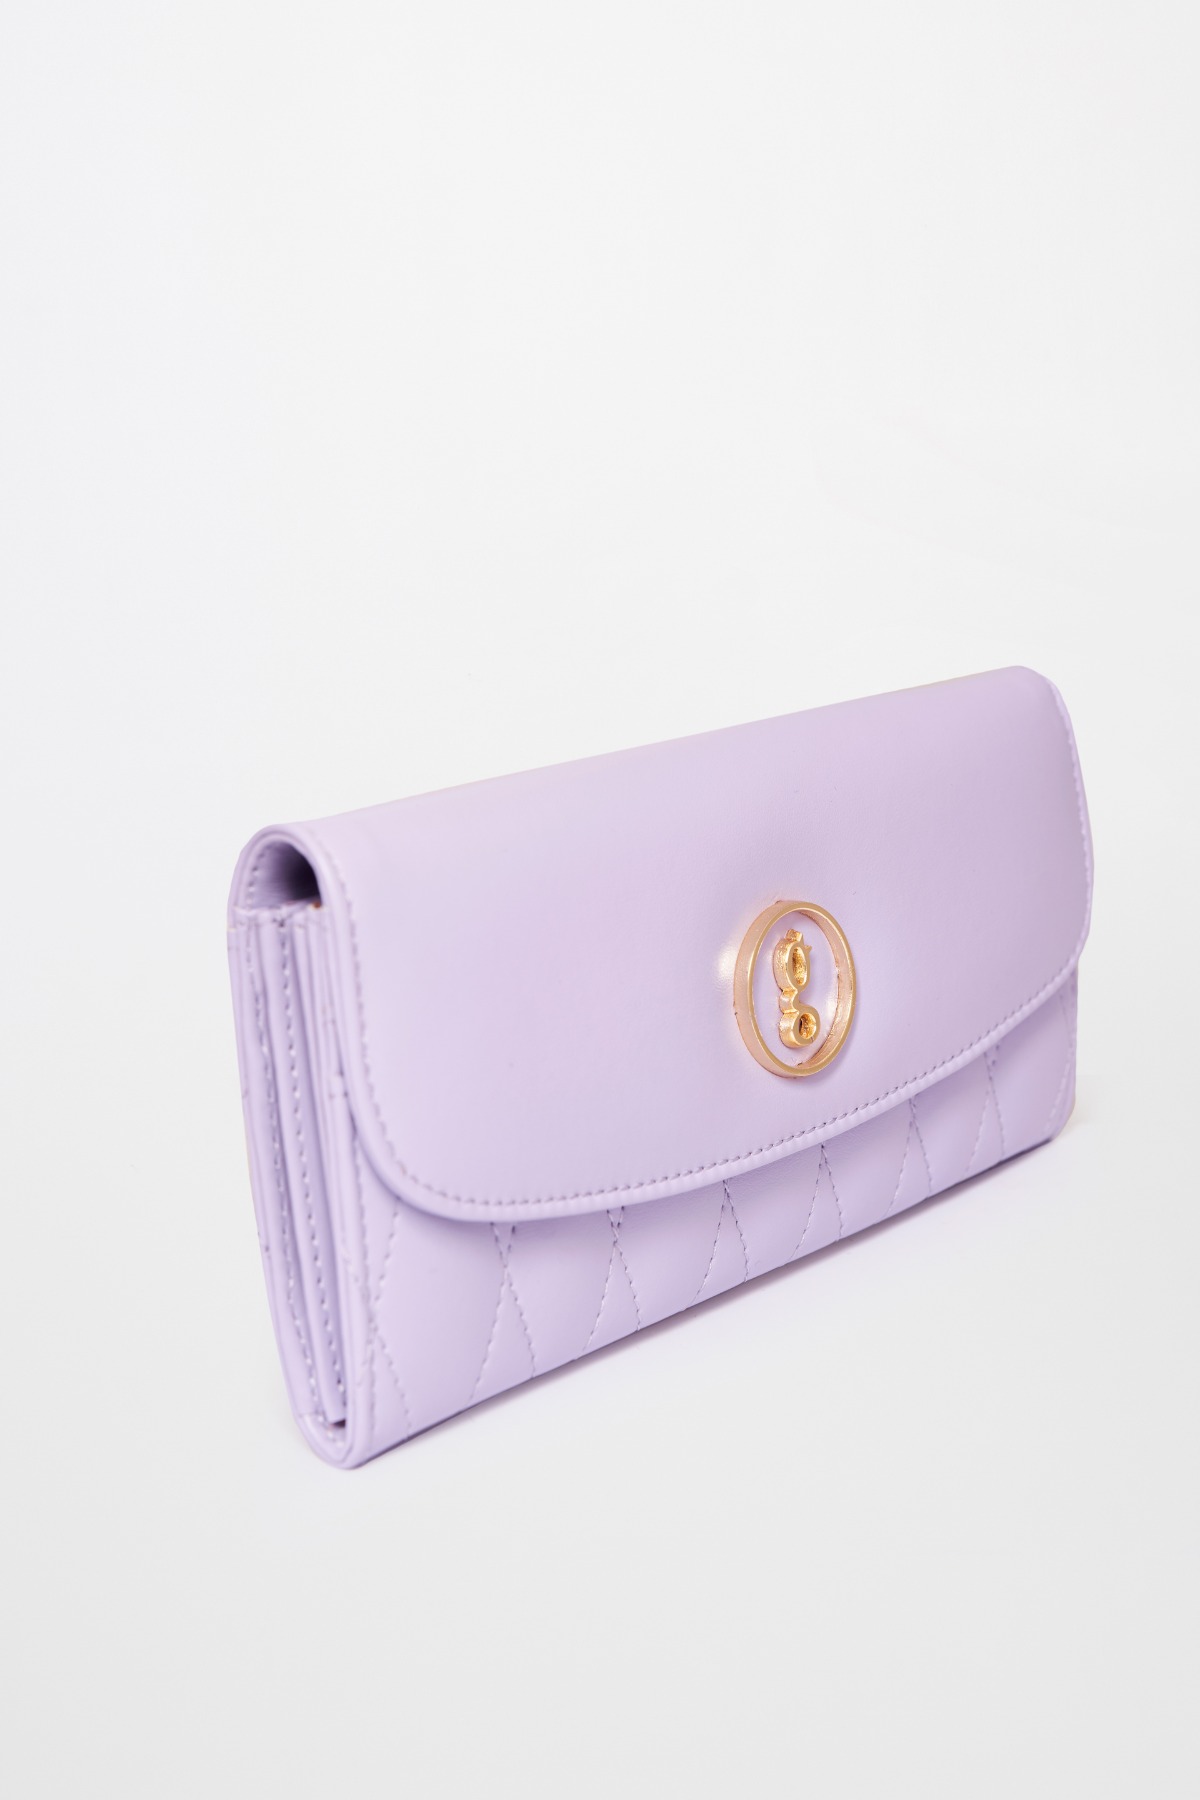 1 - Lilac Hand Bag, image 1